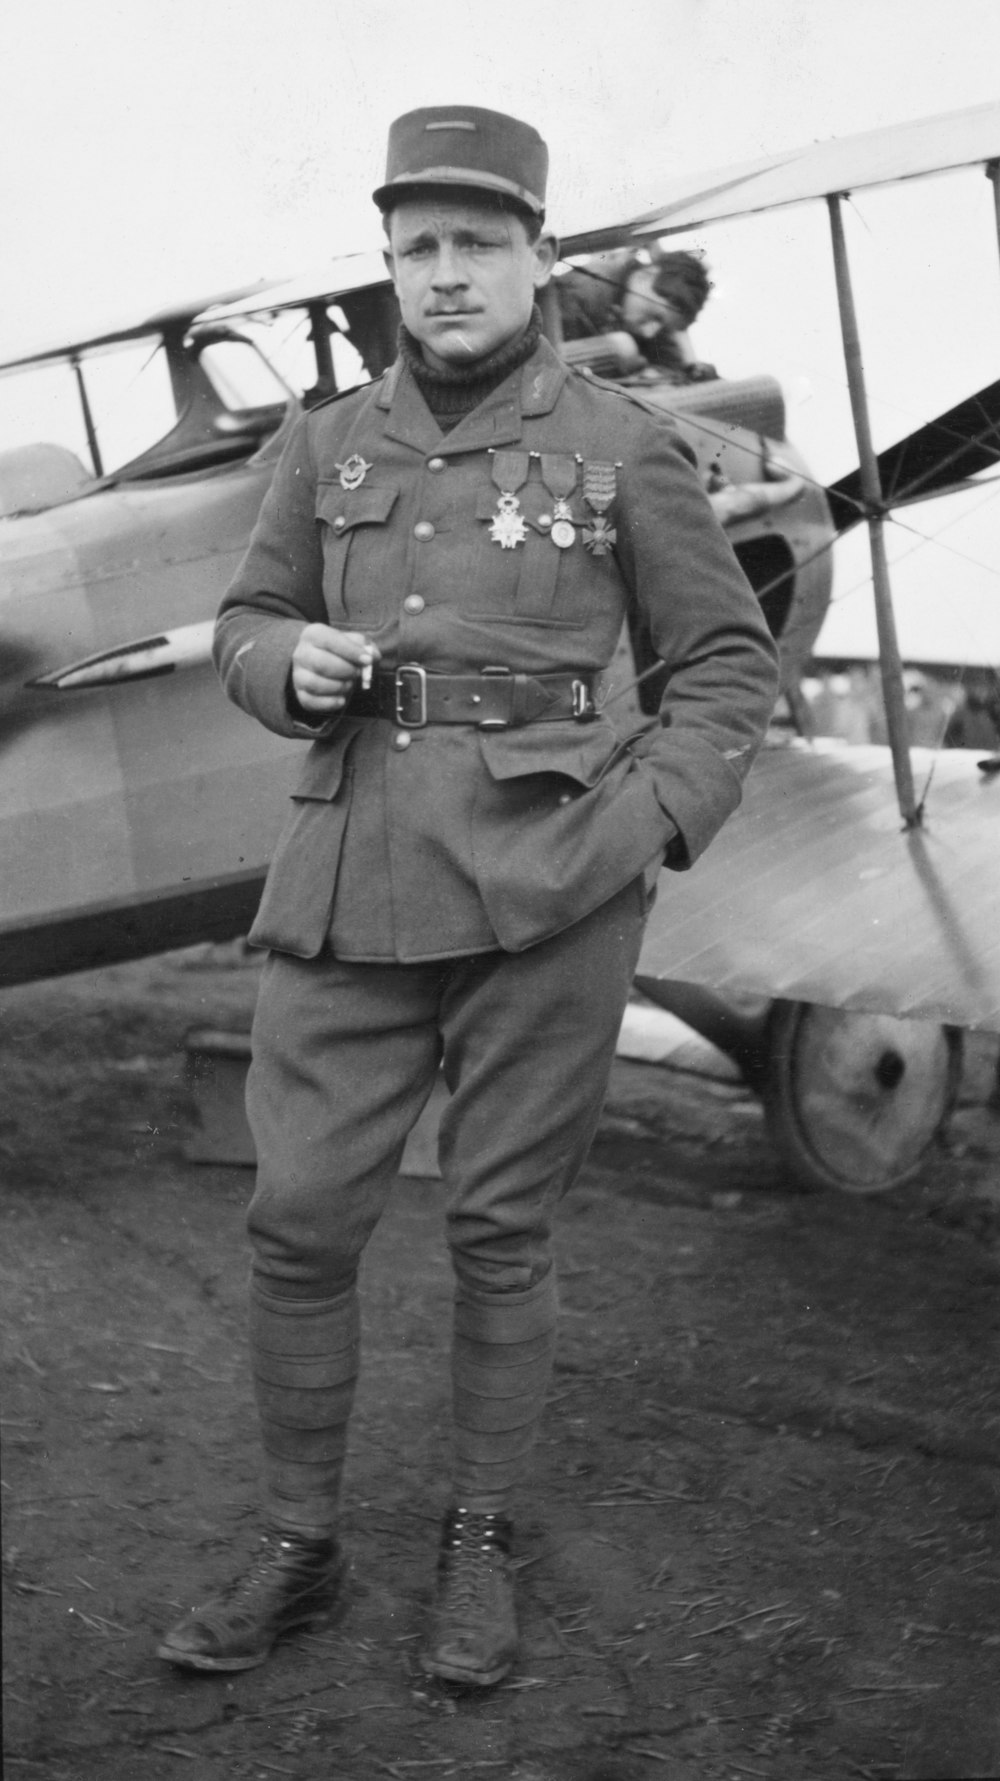 Teniente Raoul Lufbery, retrato de cuerpo entero, de pie junto al avión, en uniforme, mirando ligeramente a la izquierda.